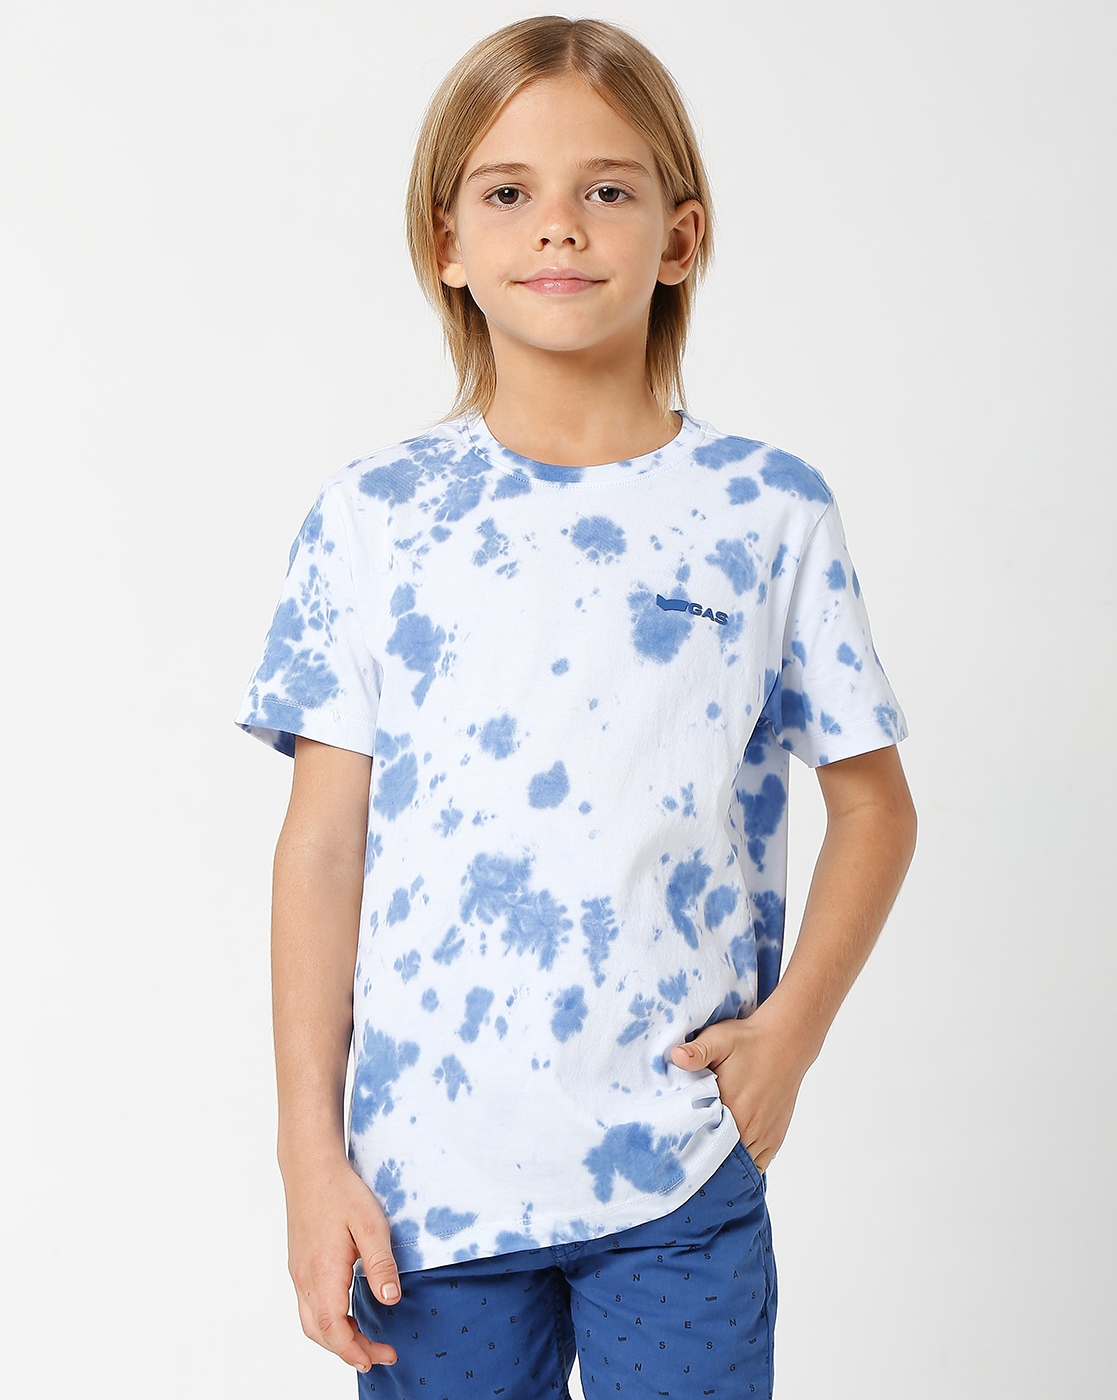 Boys Scuba Jr Tie Dye IN T-Shirts